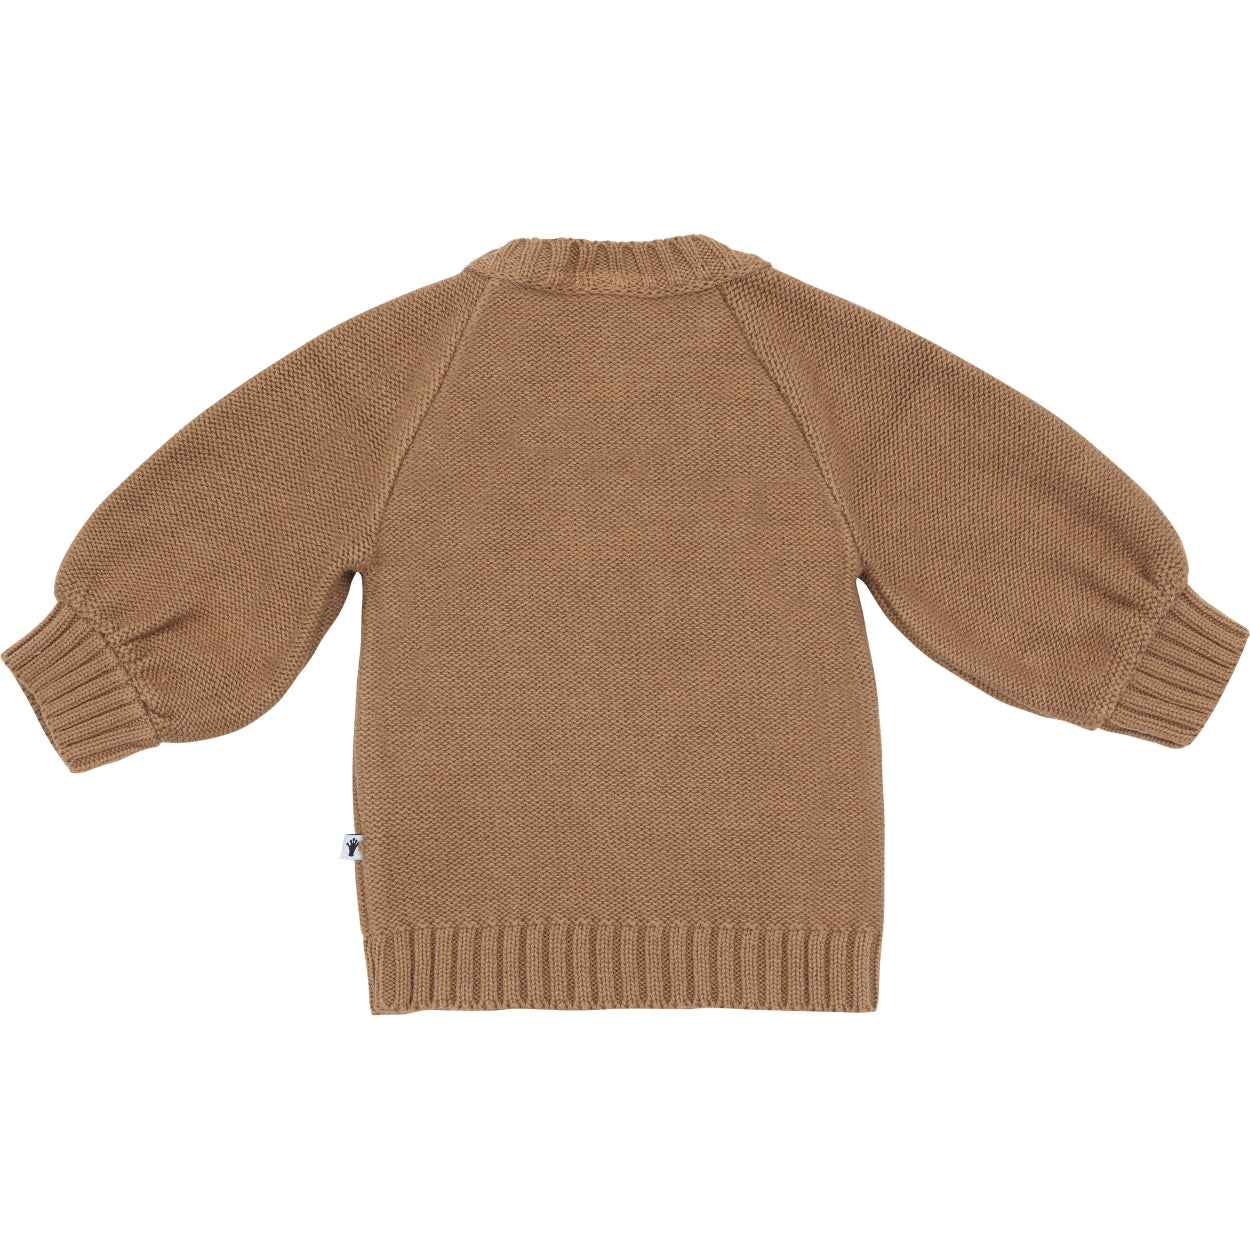 Meisjes Sweater Dot van Klein Baby in de kleur Burro in maat 86.